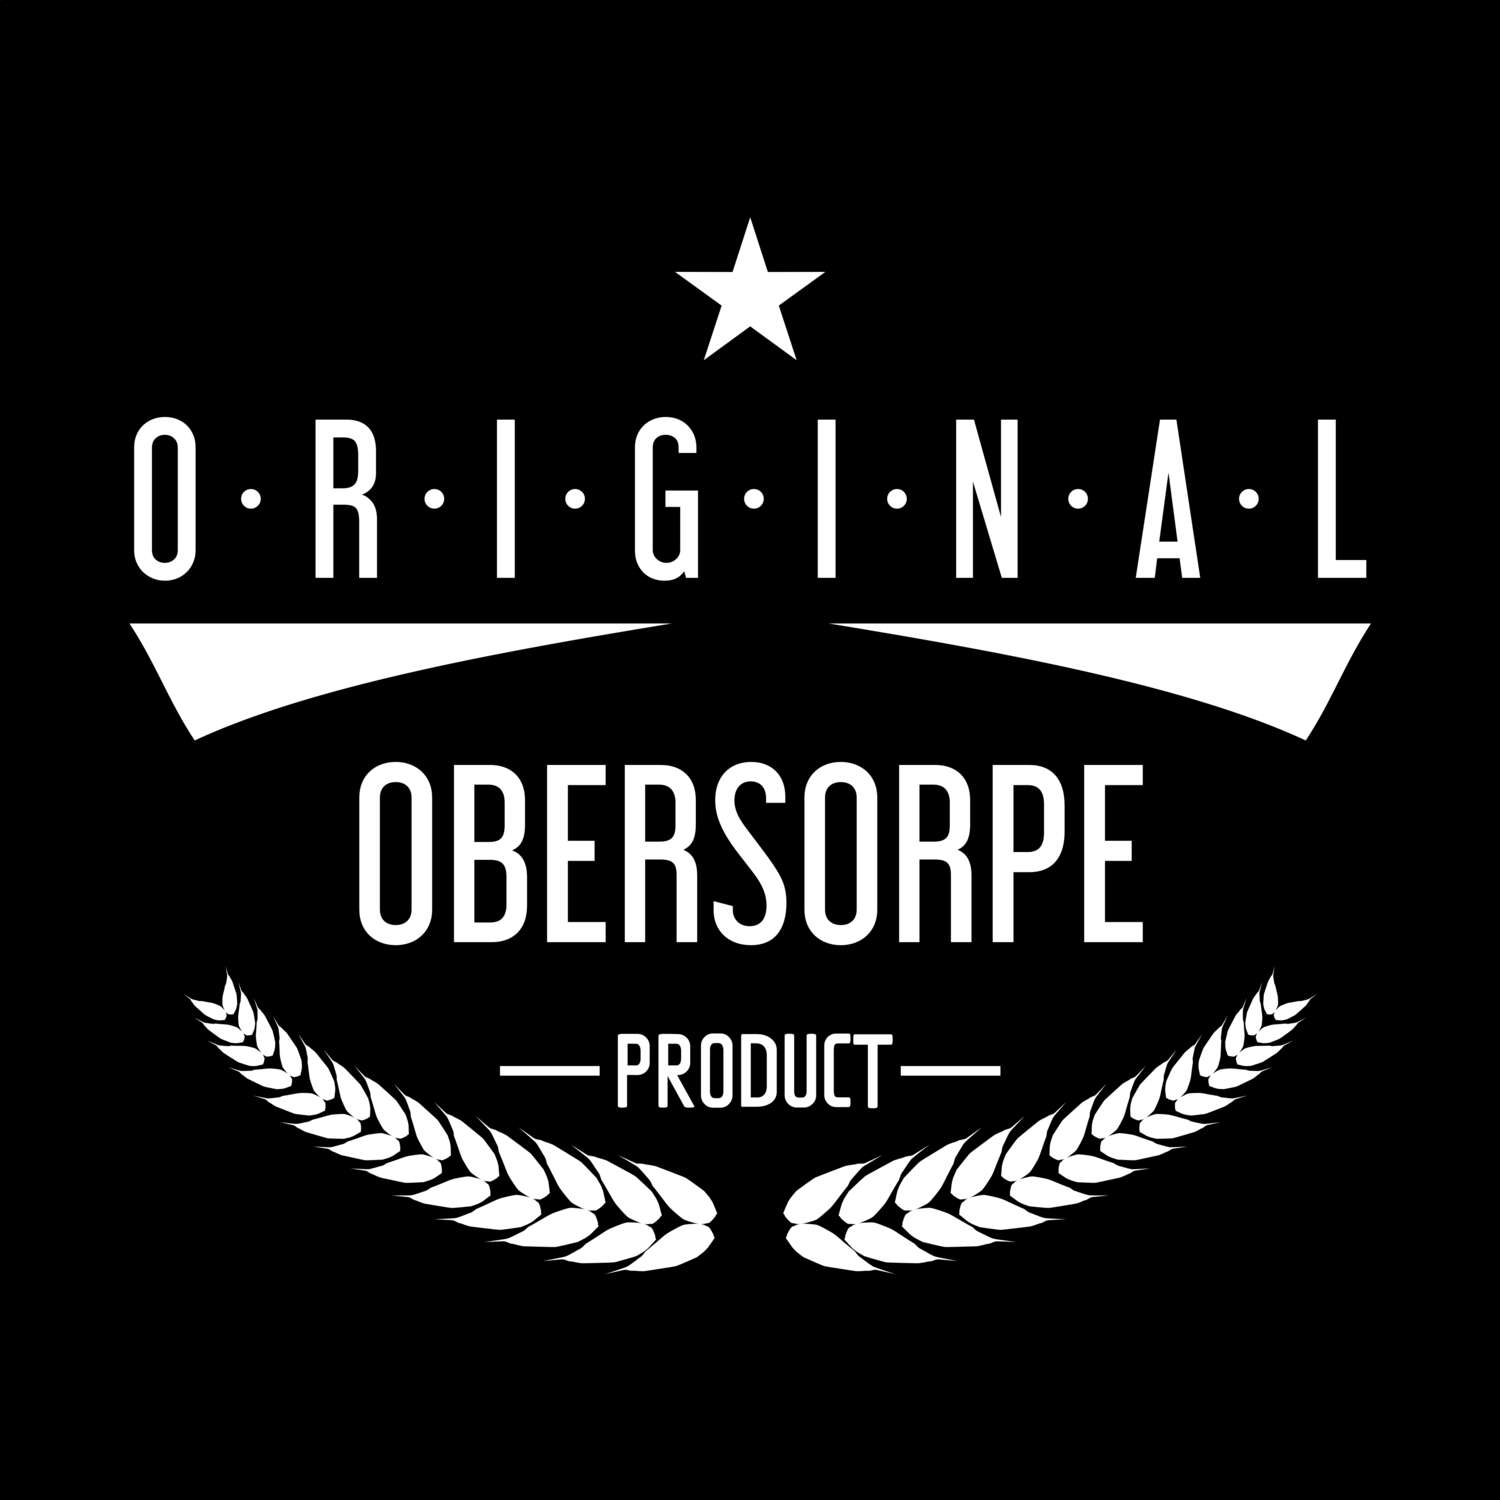 Obersorpe T-Shirt »Original Product«